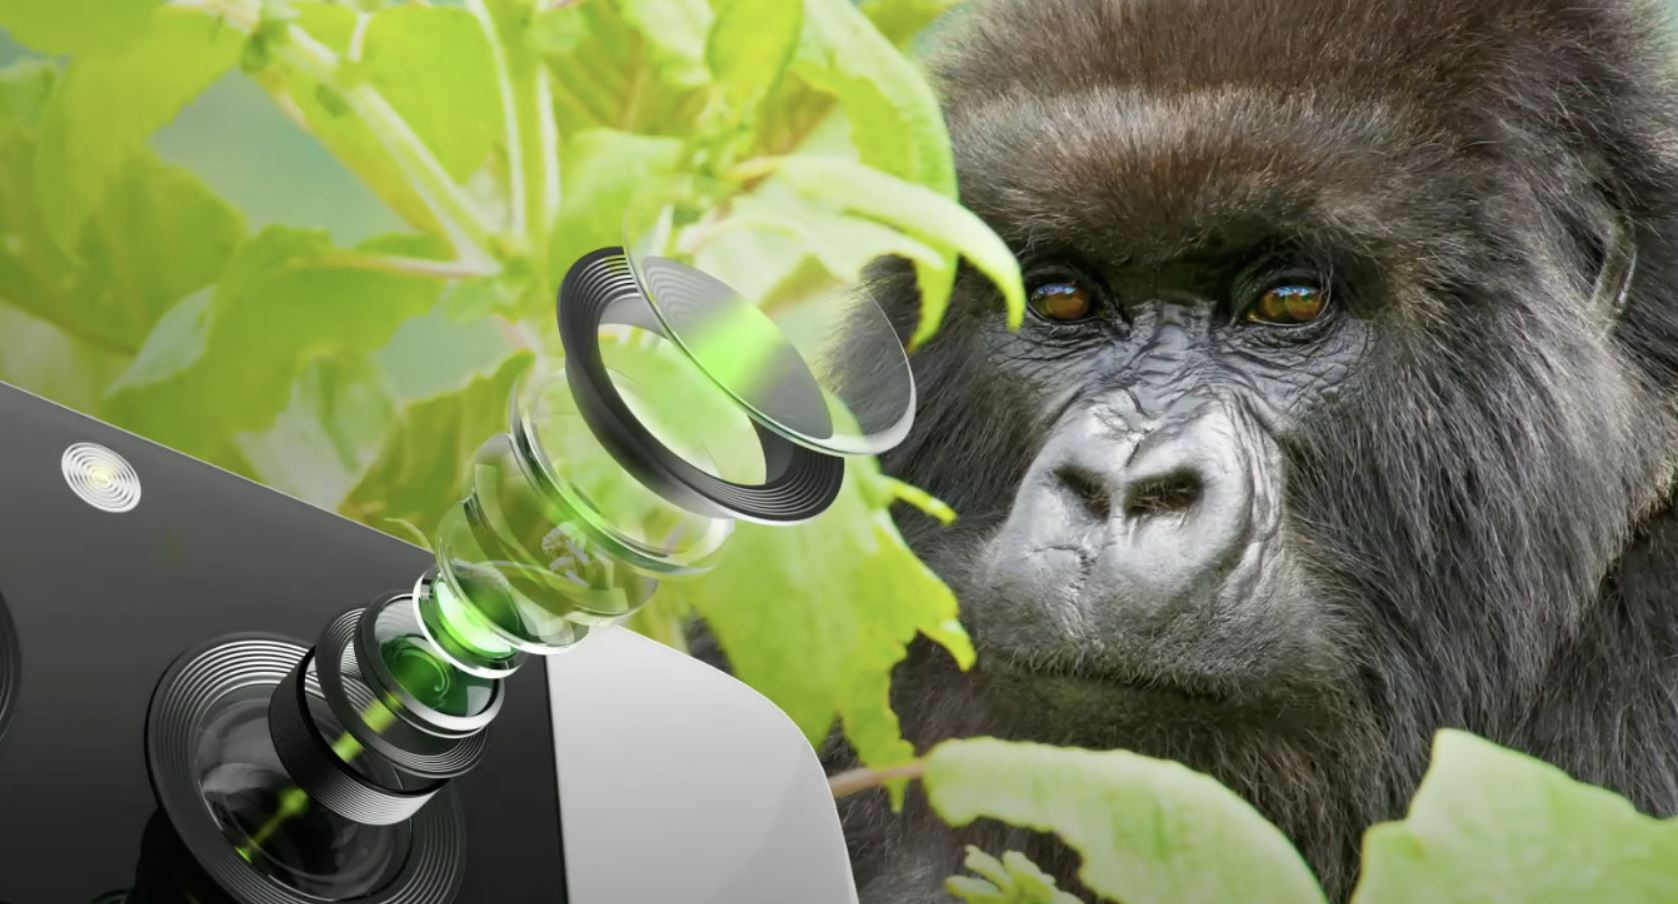 Νέο Gorilla Glass της Corning που προστατεύει τους φακούς της κάμερας και επιτρέπει περισσότερο φως